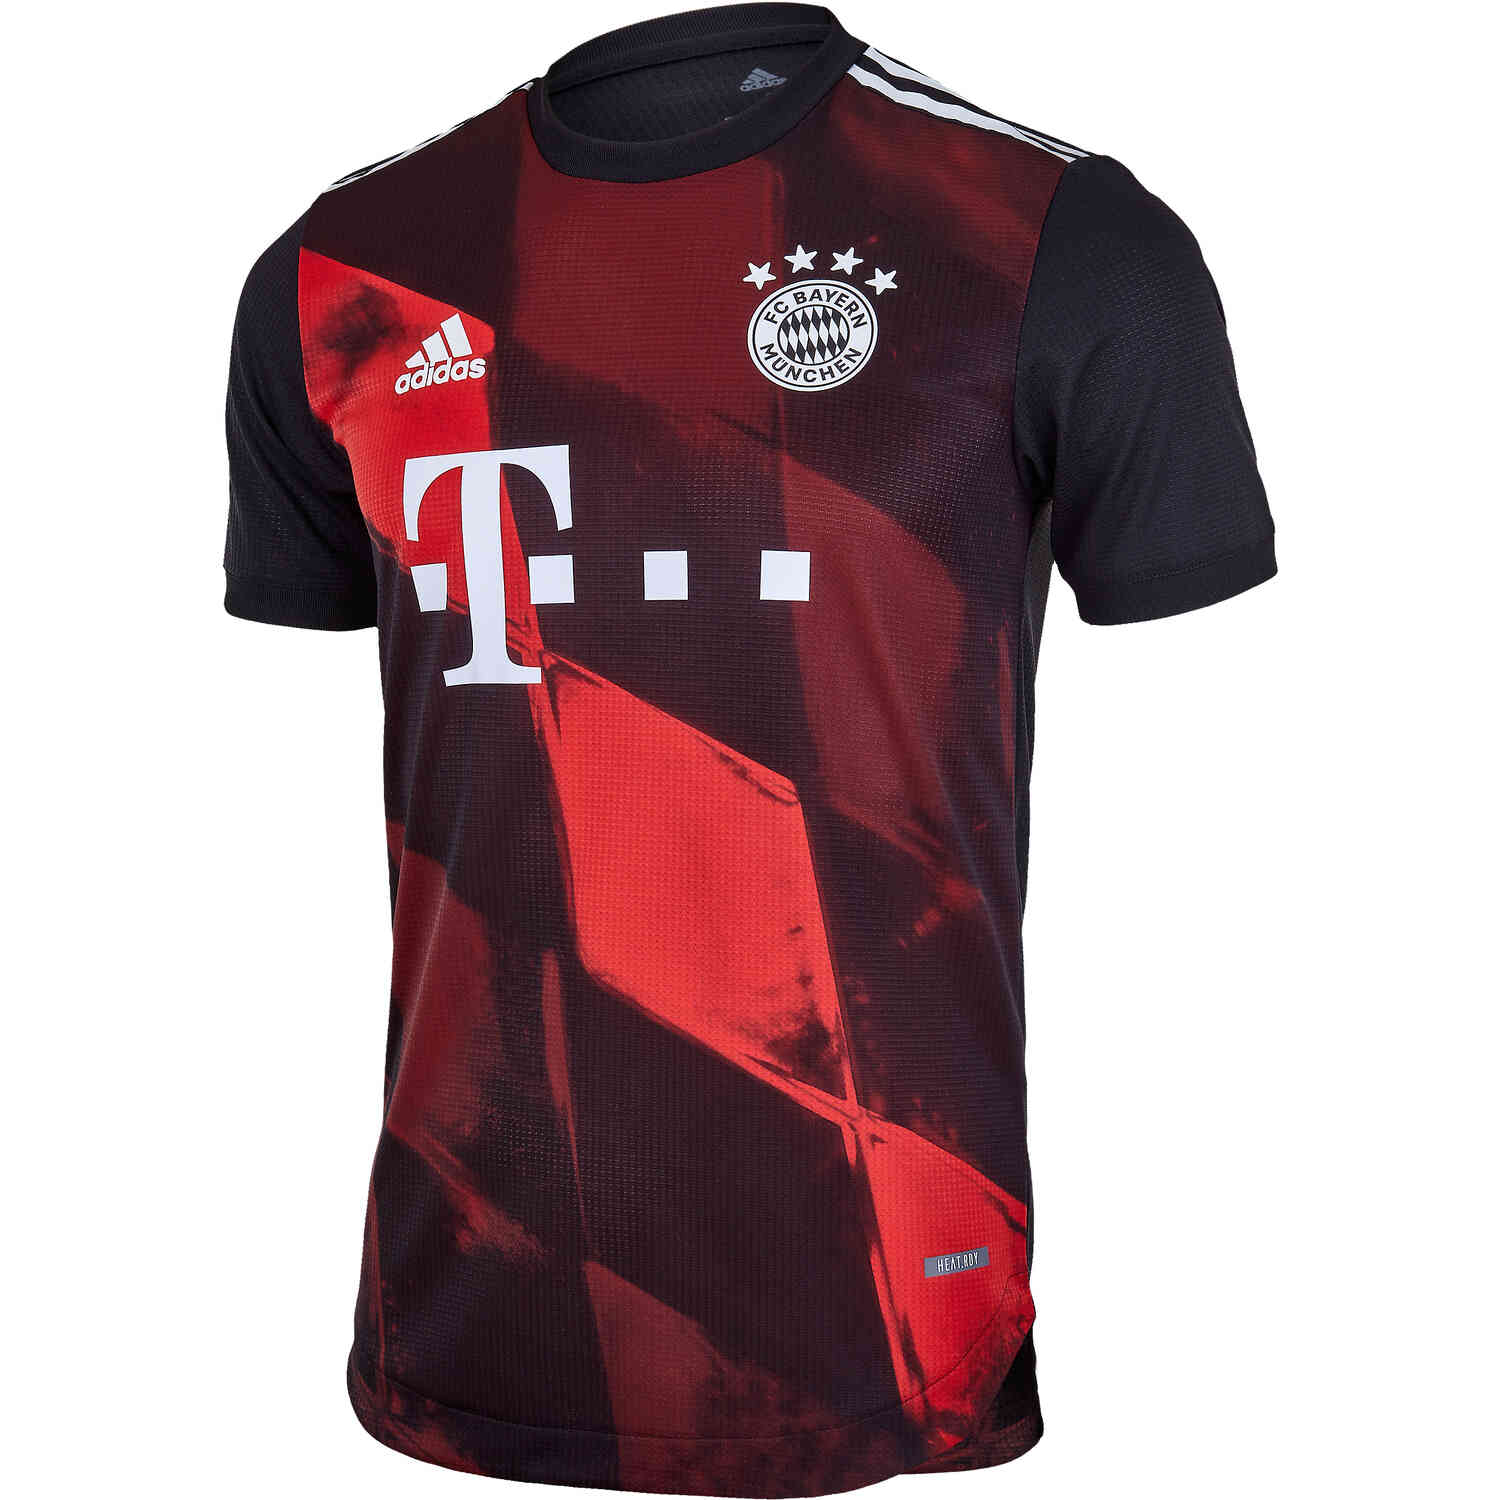 2020/21 adidas Bayern Munich 3rd Authentic Jersey - SoccerPro